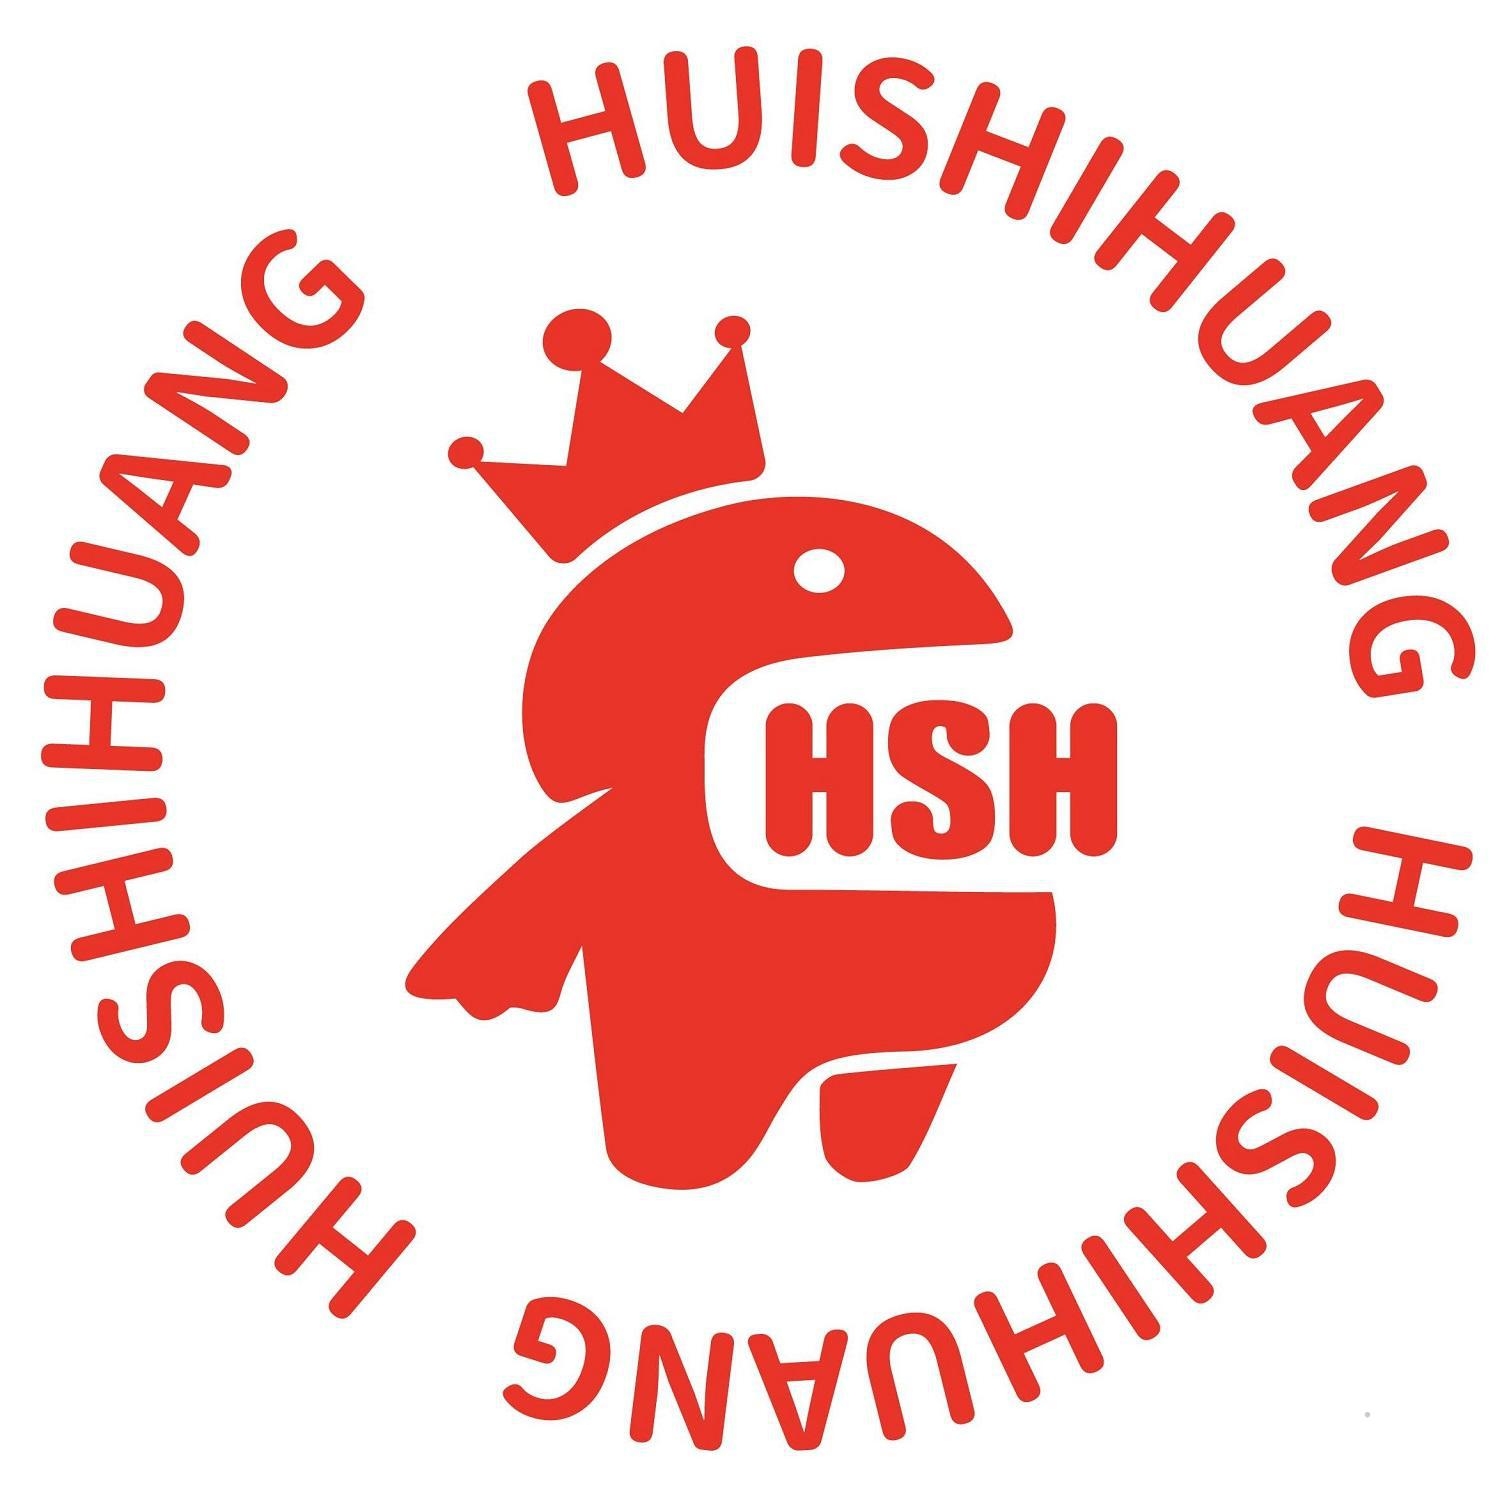 HUISHIHUANG HSH